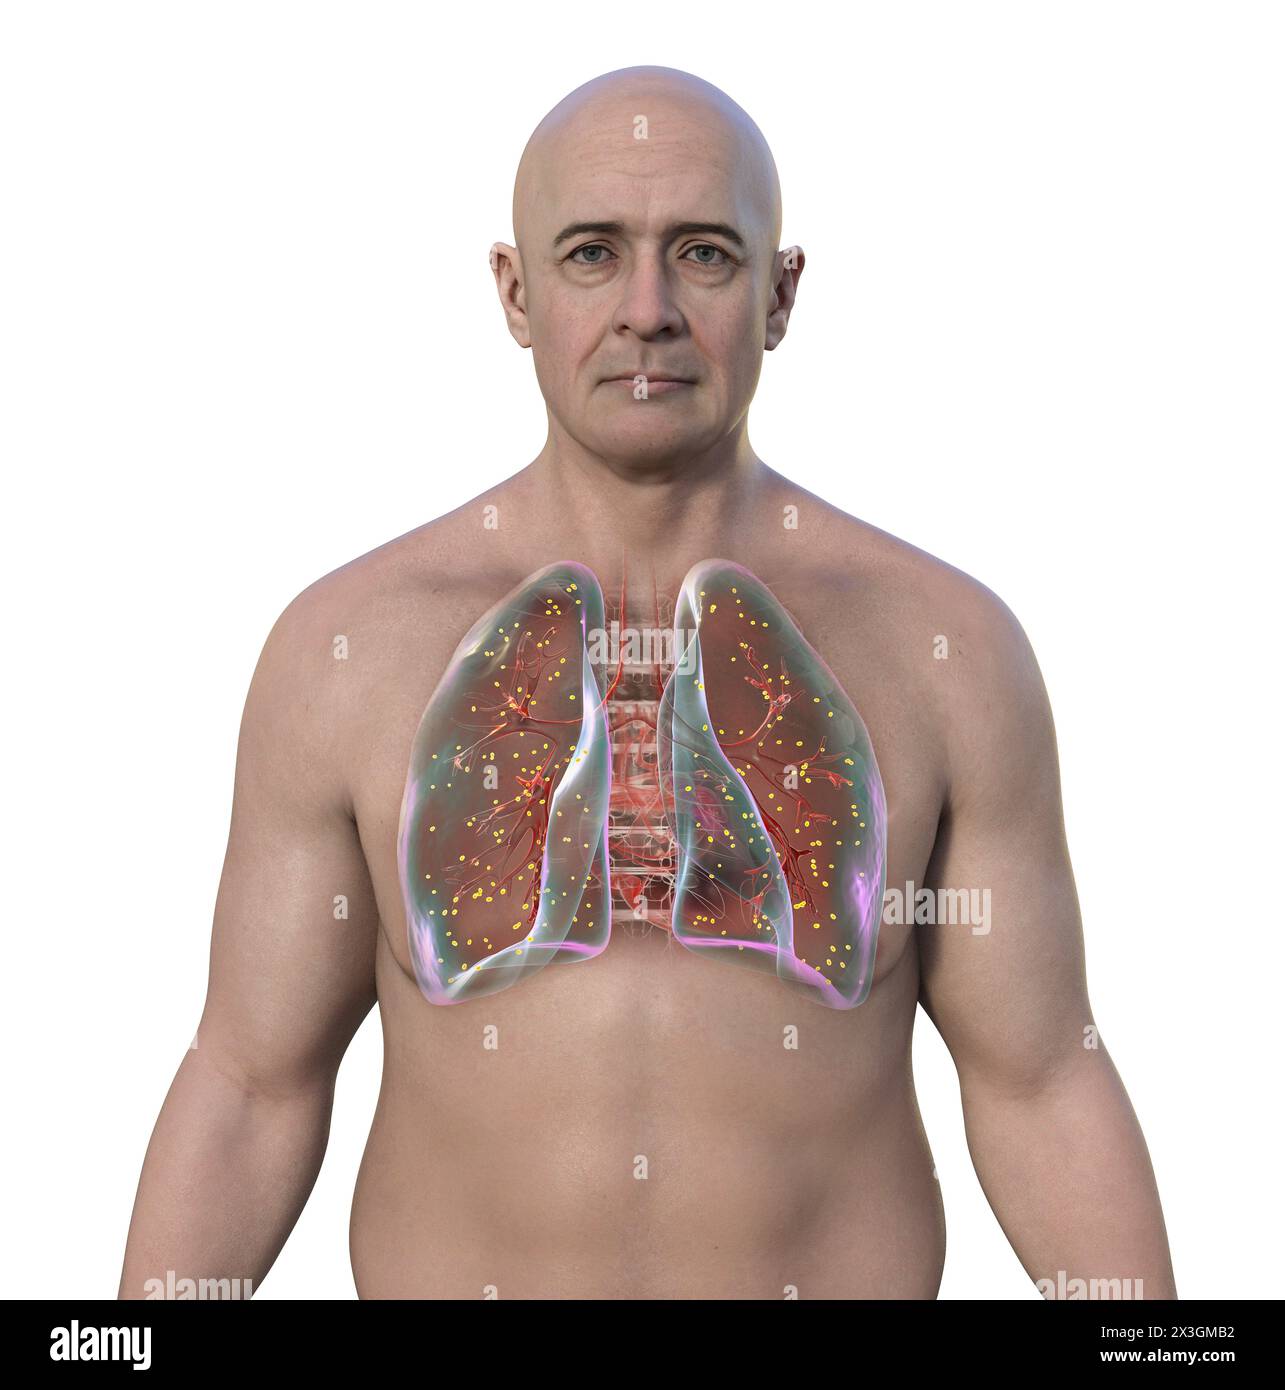 Abbildung eines Mannes mit Lungenadiaspiromykose, einer durch den Pilz Emmonsia spp. Verursachten Atemwegsinfektion, die durch das Vorhandensein von vergrößerten verkapselten Pilzsporen im Lungengewebe gekennzeichnet ist. Stockfoto